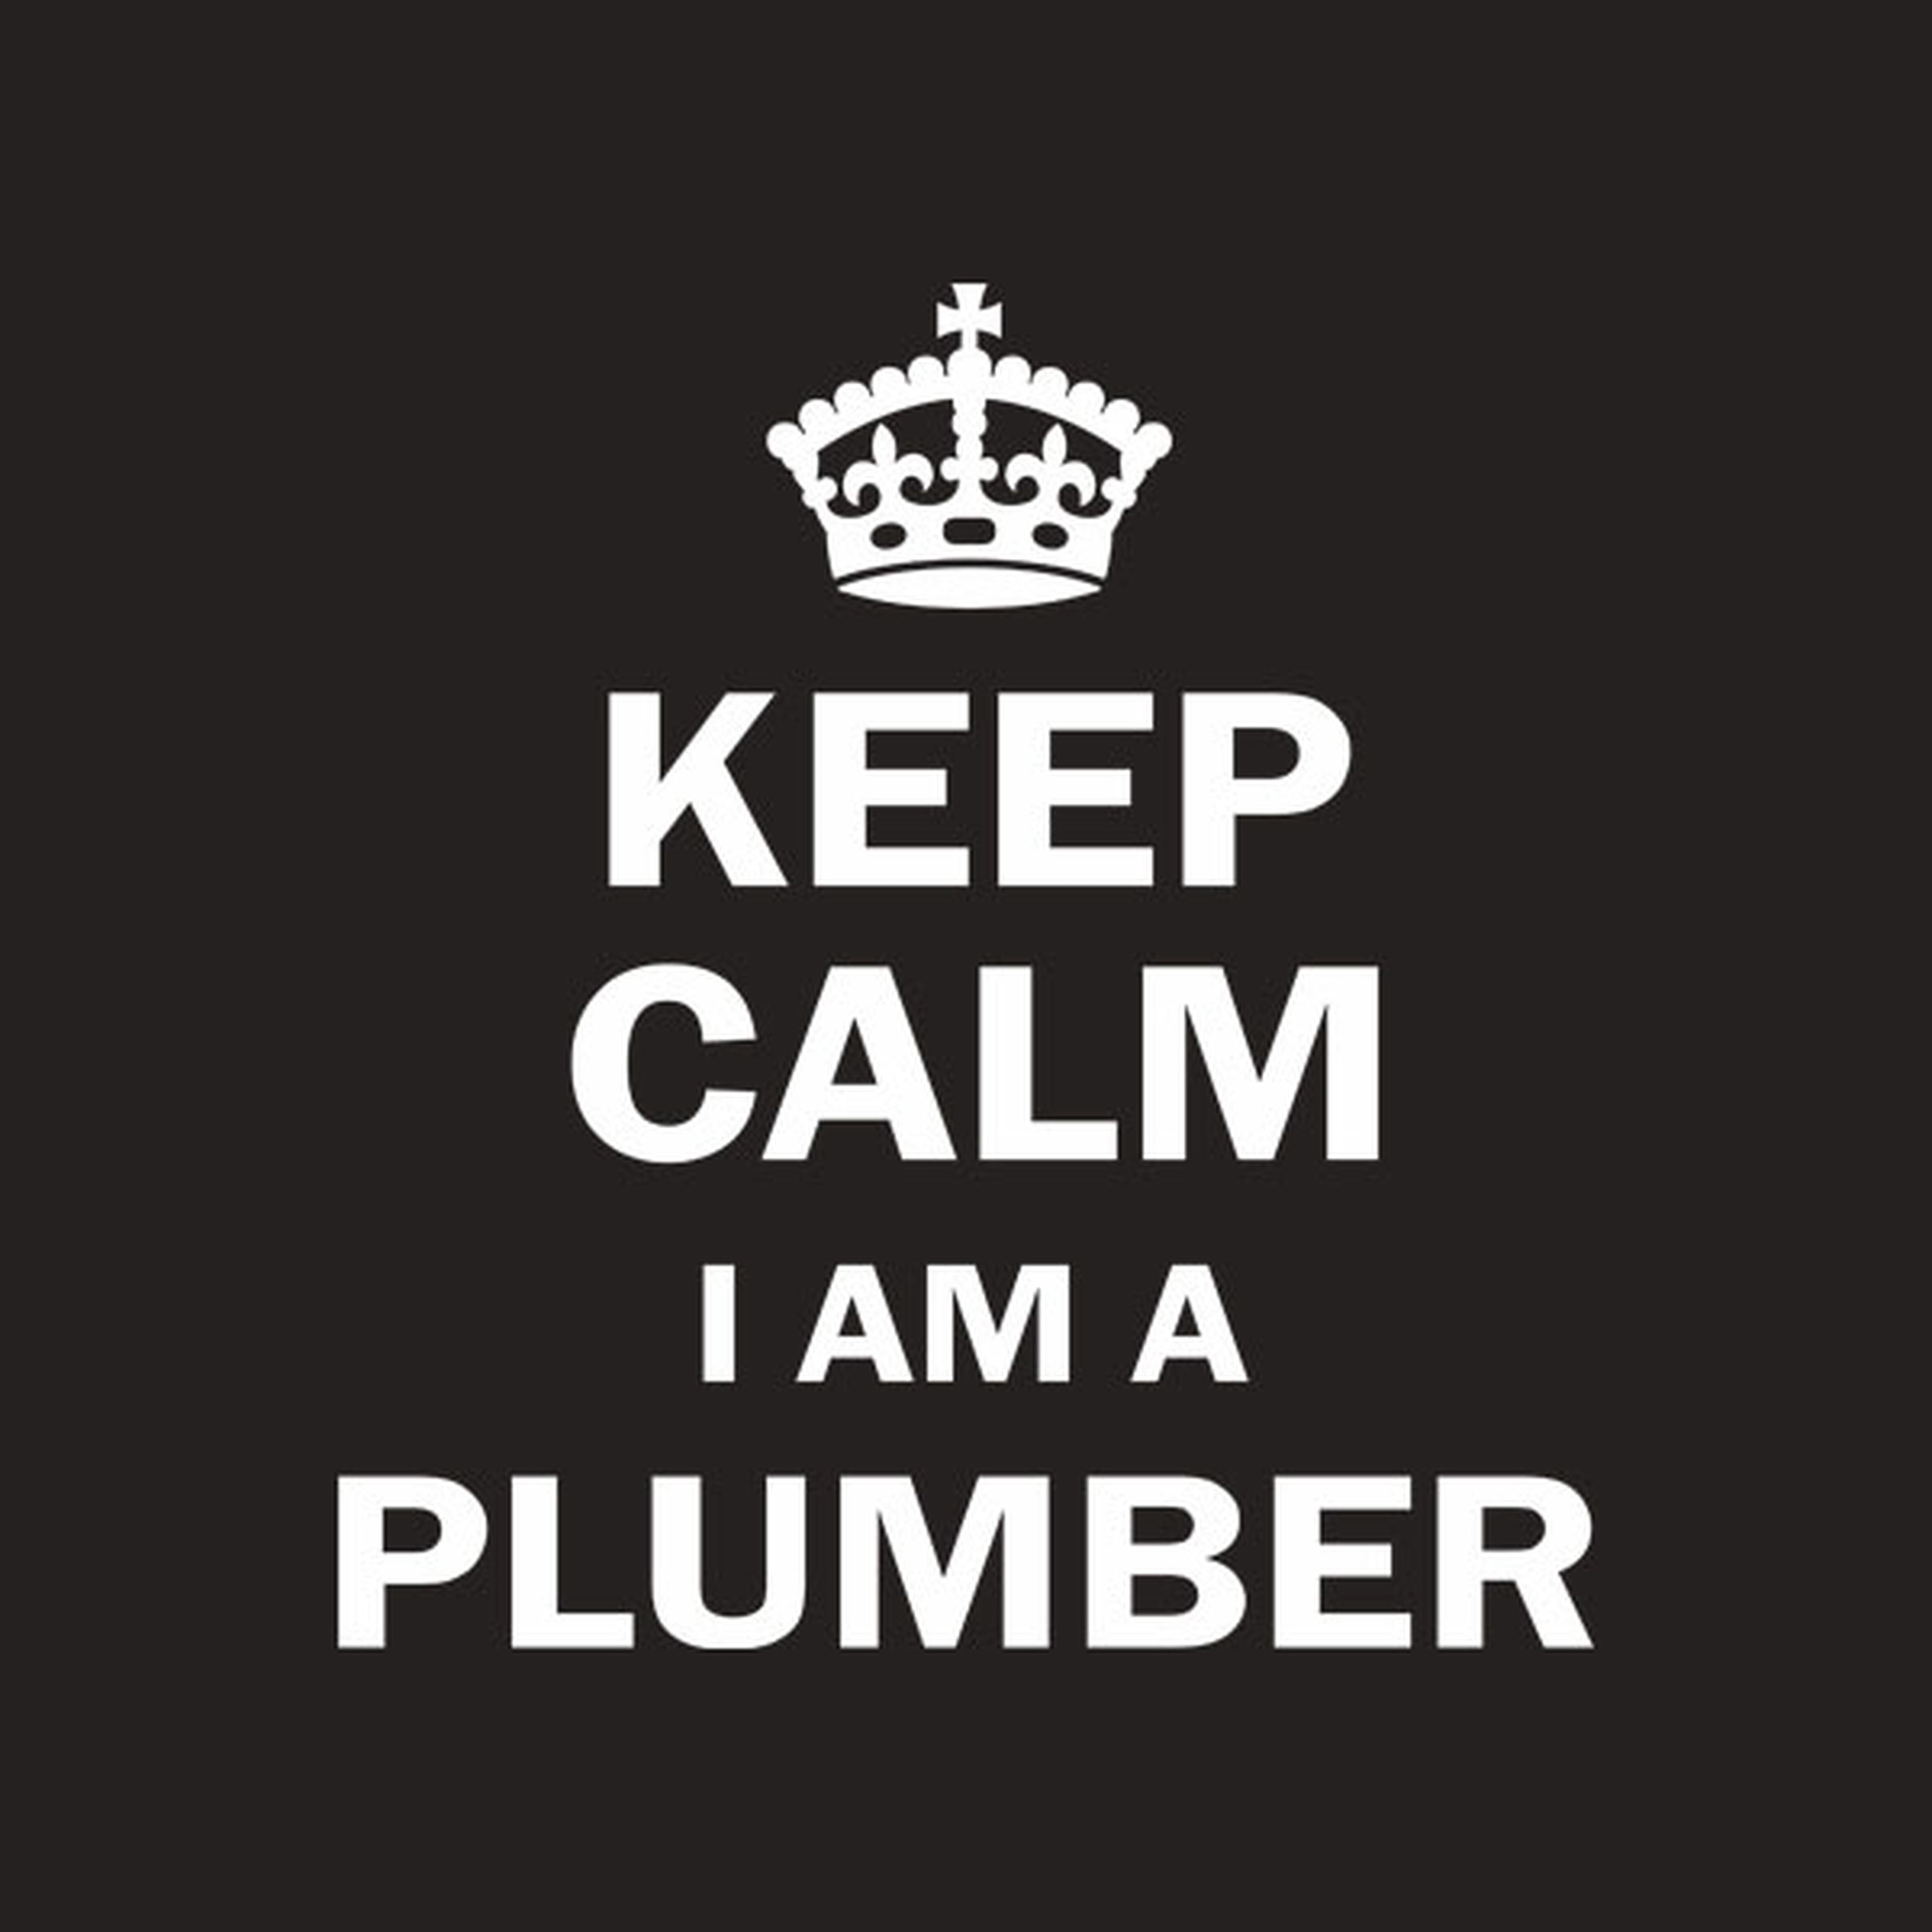 Keep calm. I am a plumber - T-shirt